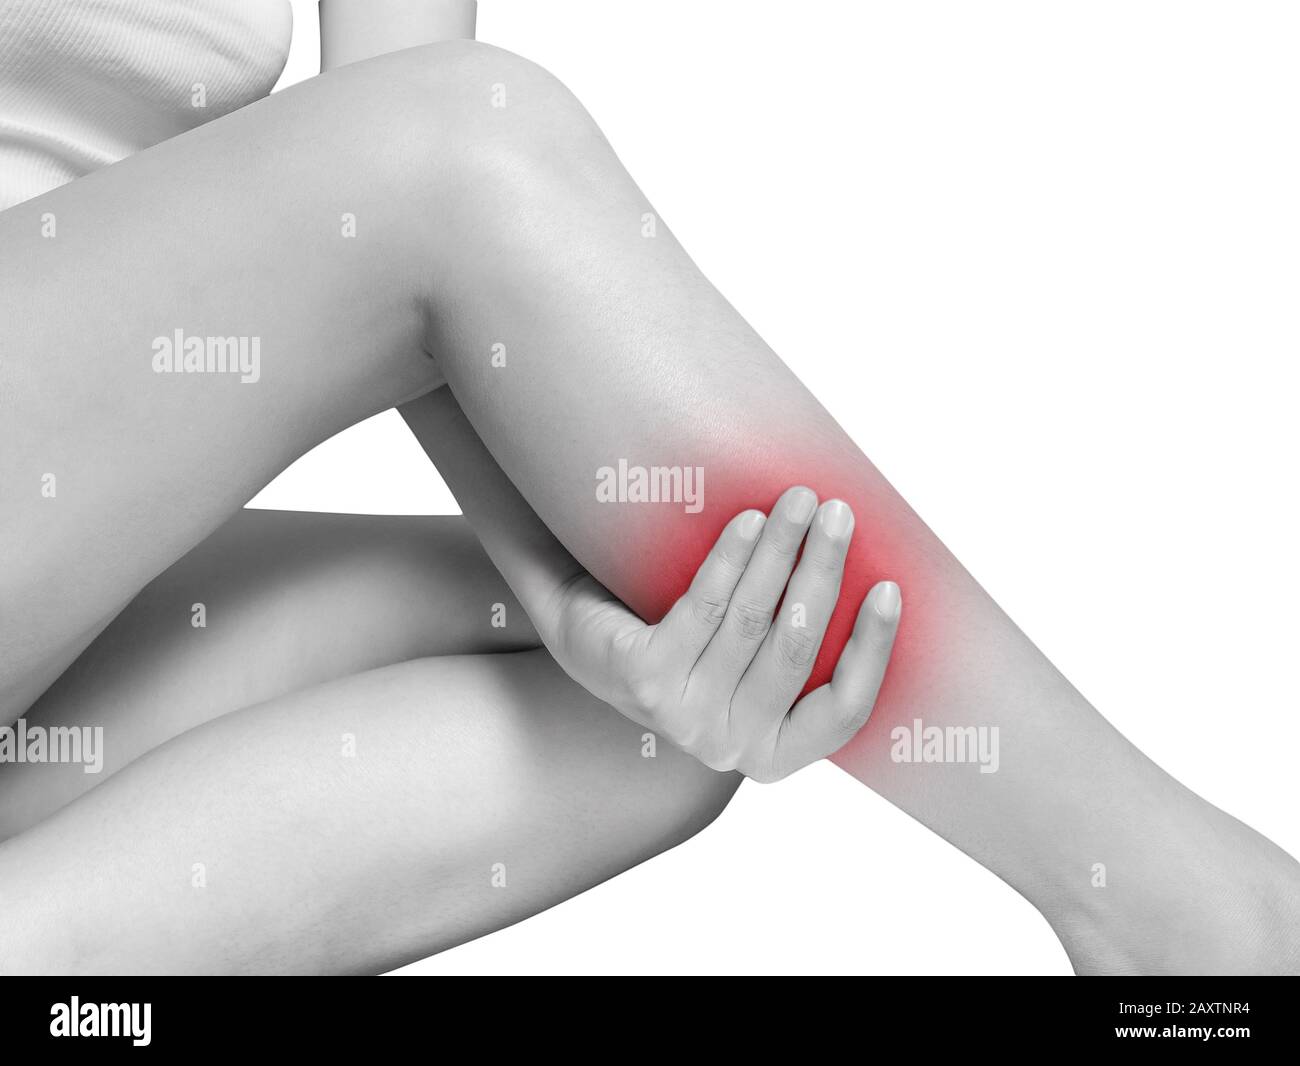 Frau, die an Beinschmerzen und Wadenschmerzen leidet. Mono-Ton-Hervorhebung bei Wade, Bein isoliert auf weißem Hintergrund. Gesundheitswesen und medizinisches Konzept Stockfoto